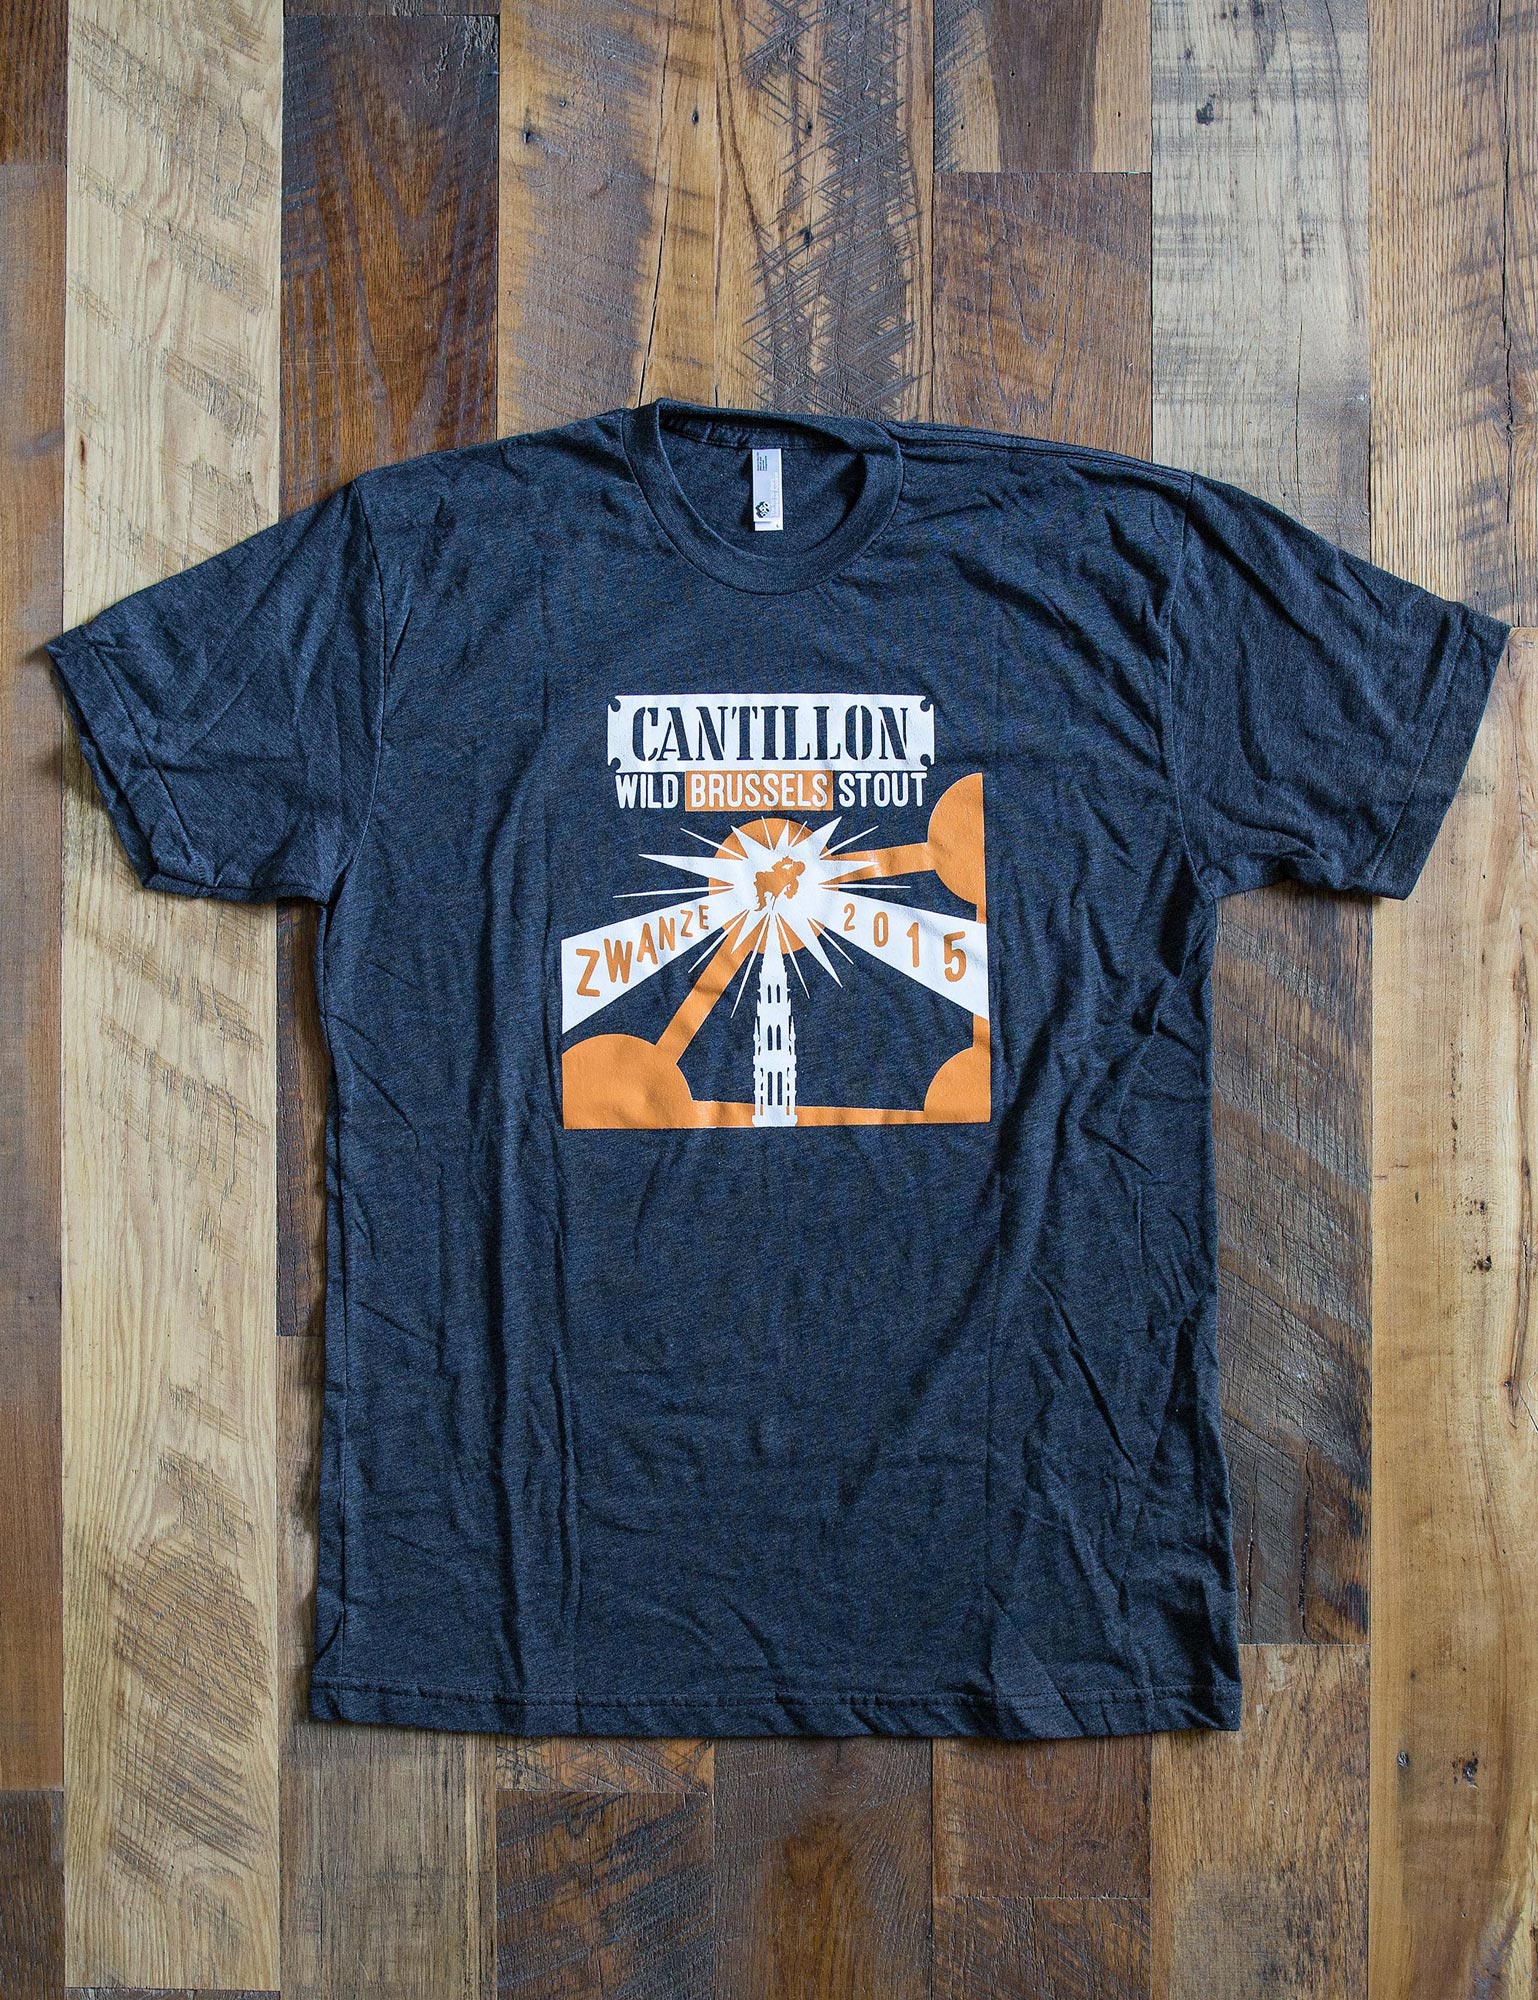 cantillon shirt